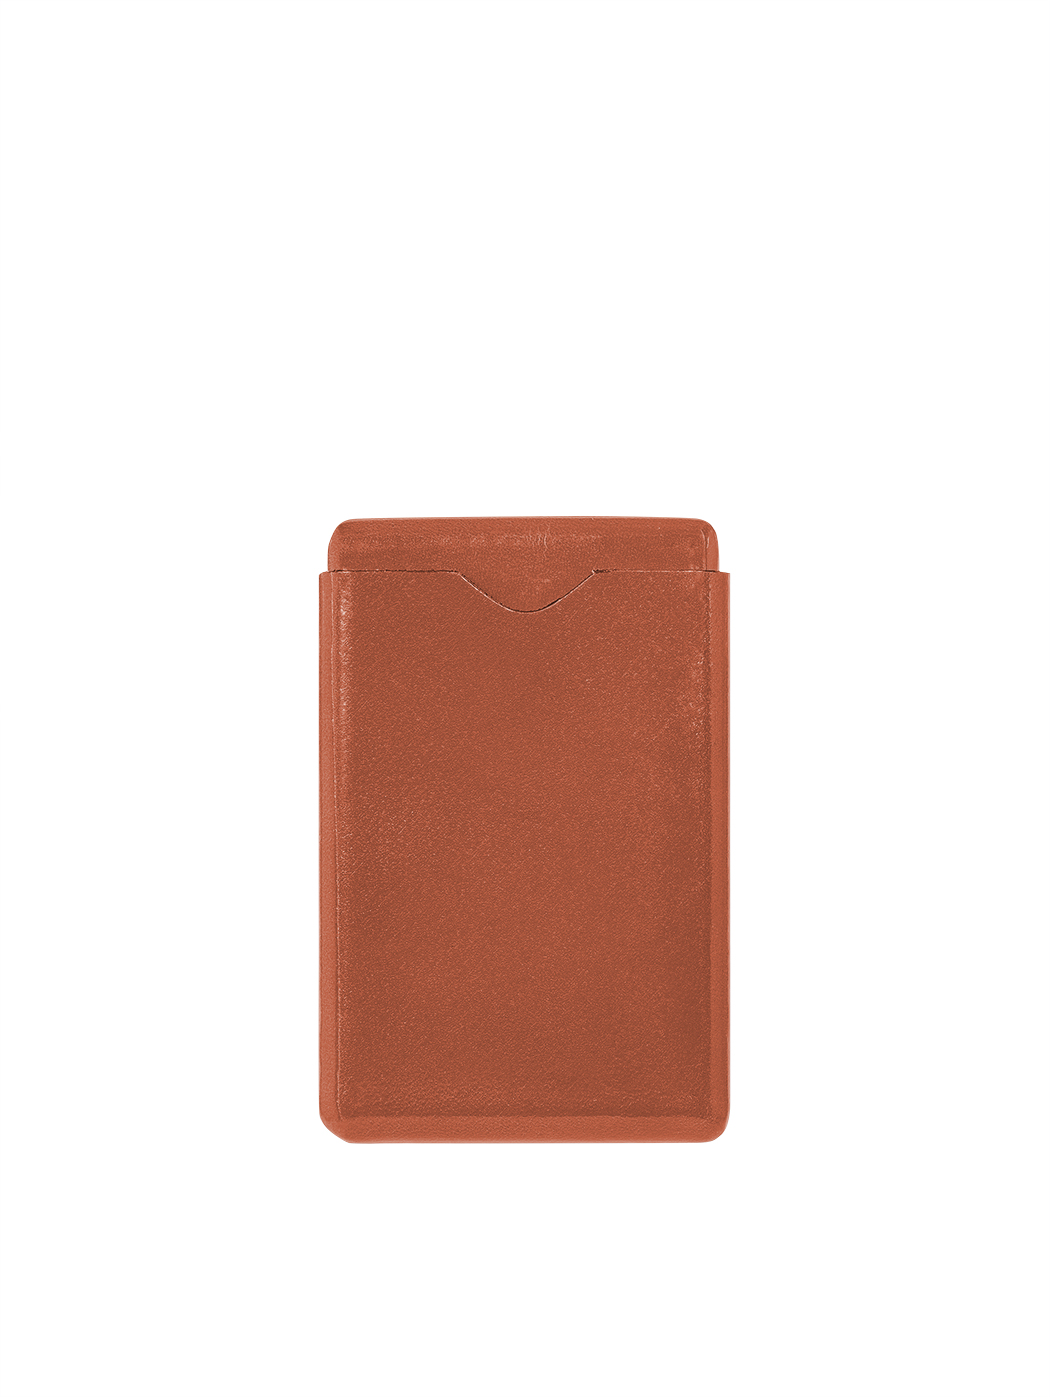 Кожаный футляр для визитных карточек  светло - коричневого цвета